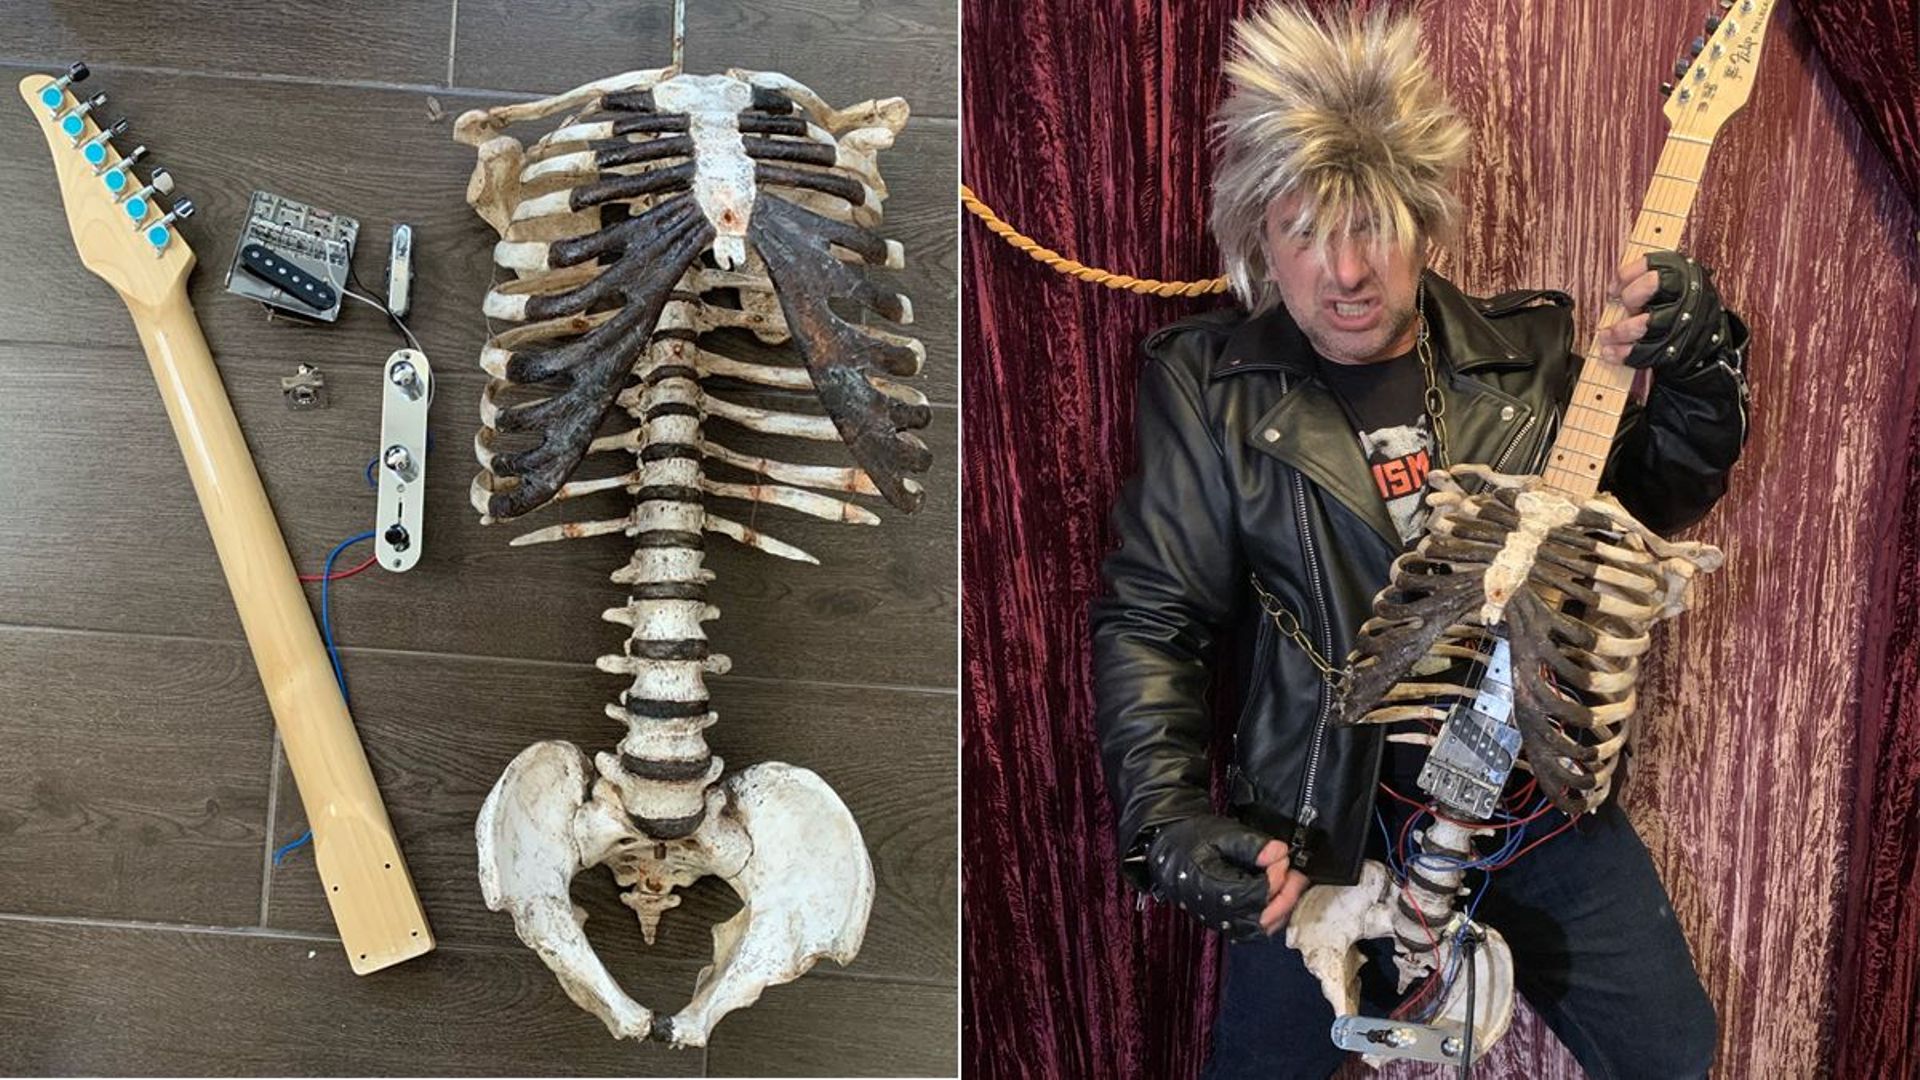 [Zapping 21] Un fan de metal a transformé le squelette de son oncle décédé en guitare